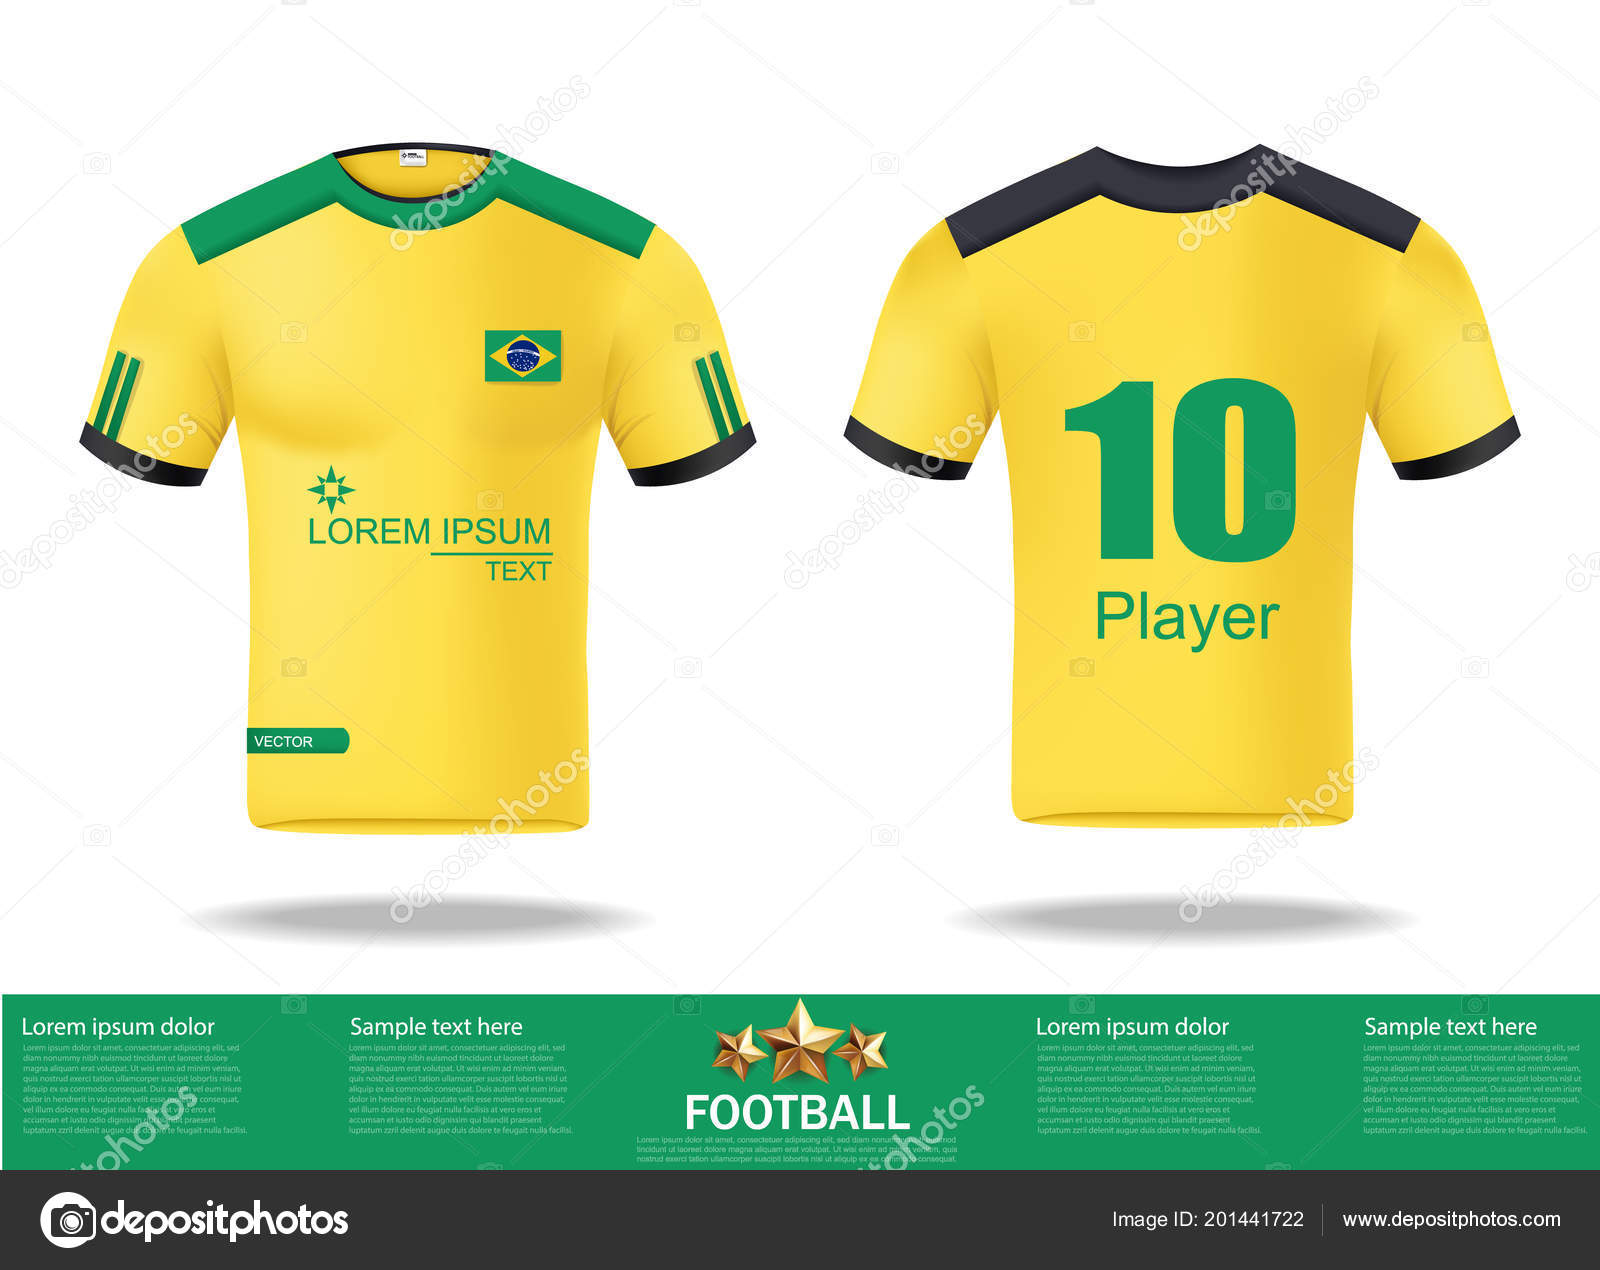 Camisetas de fútbol Vector. Plantilla de diseño para camiseta de fútbol,  kit de fútbol y camiseta